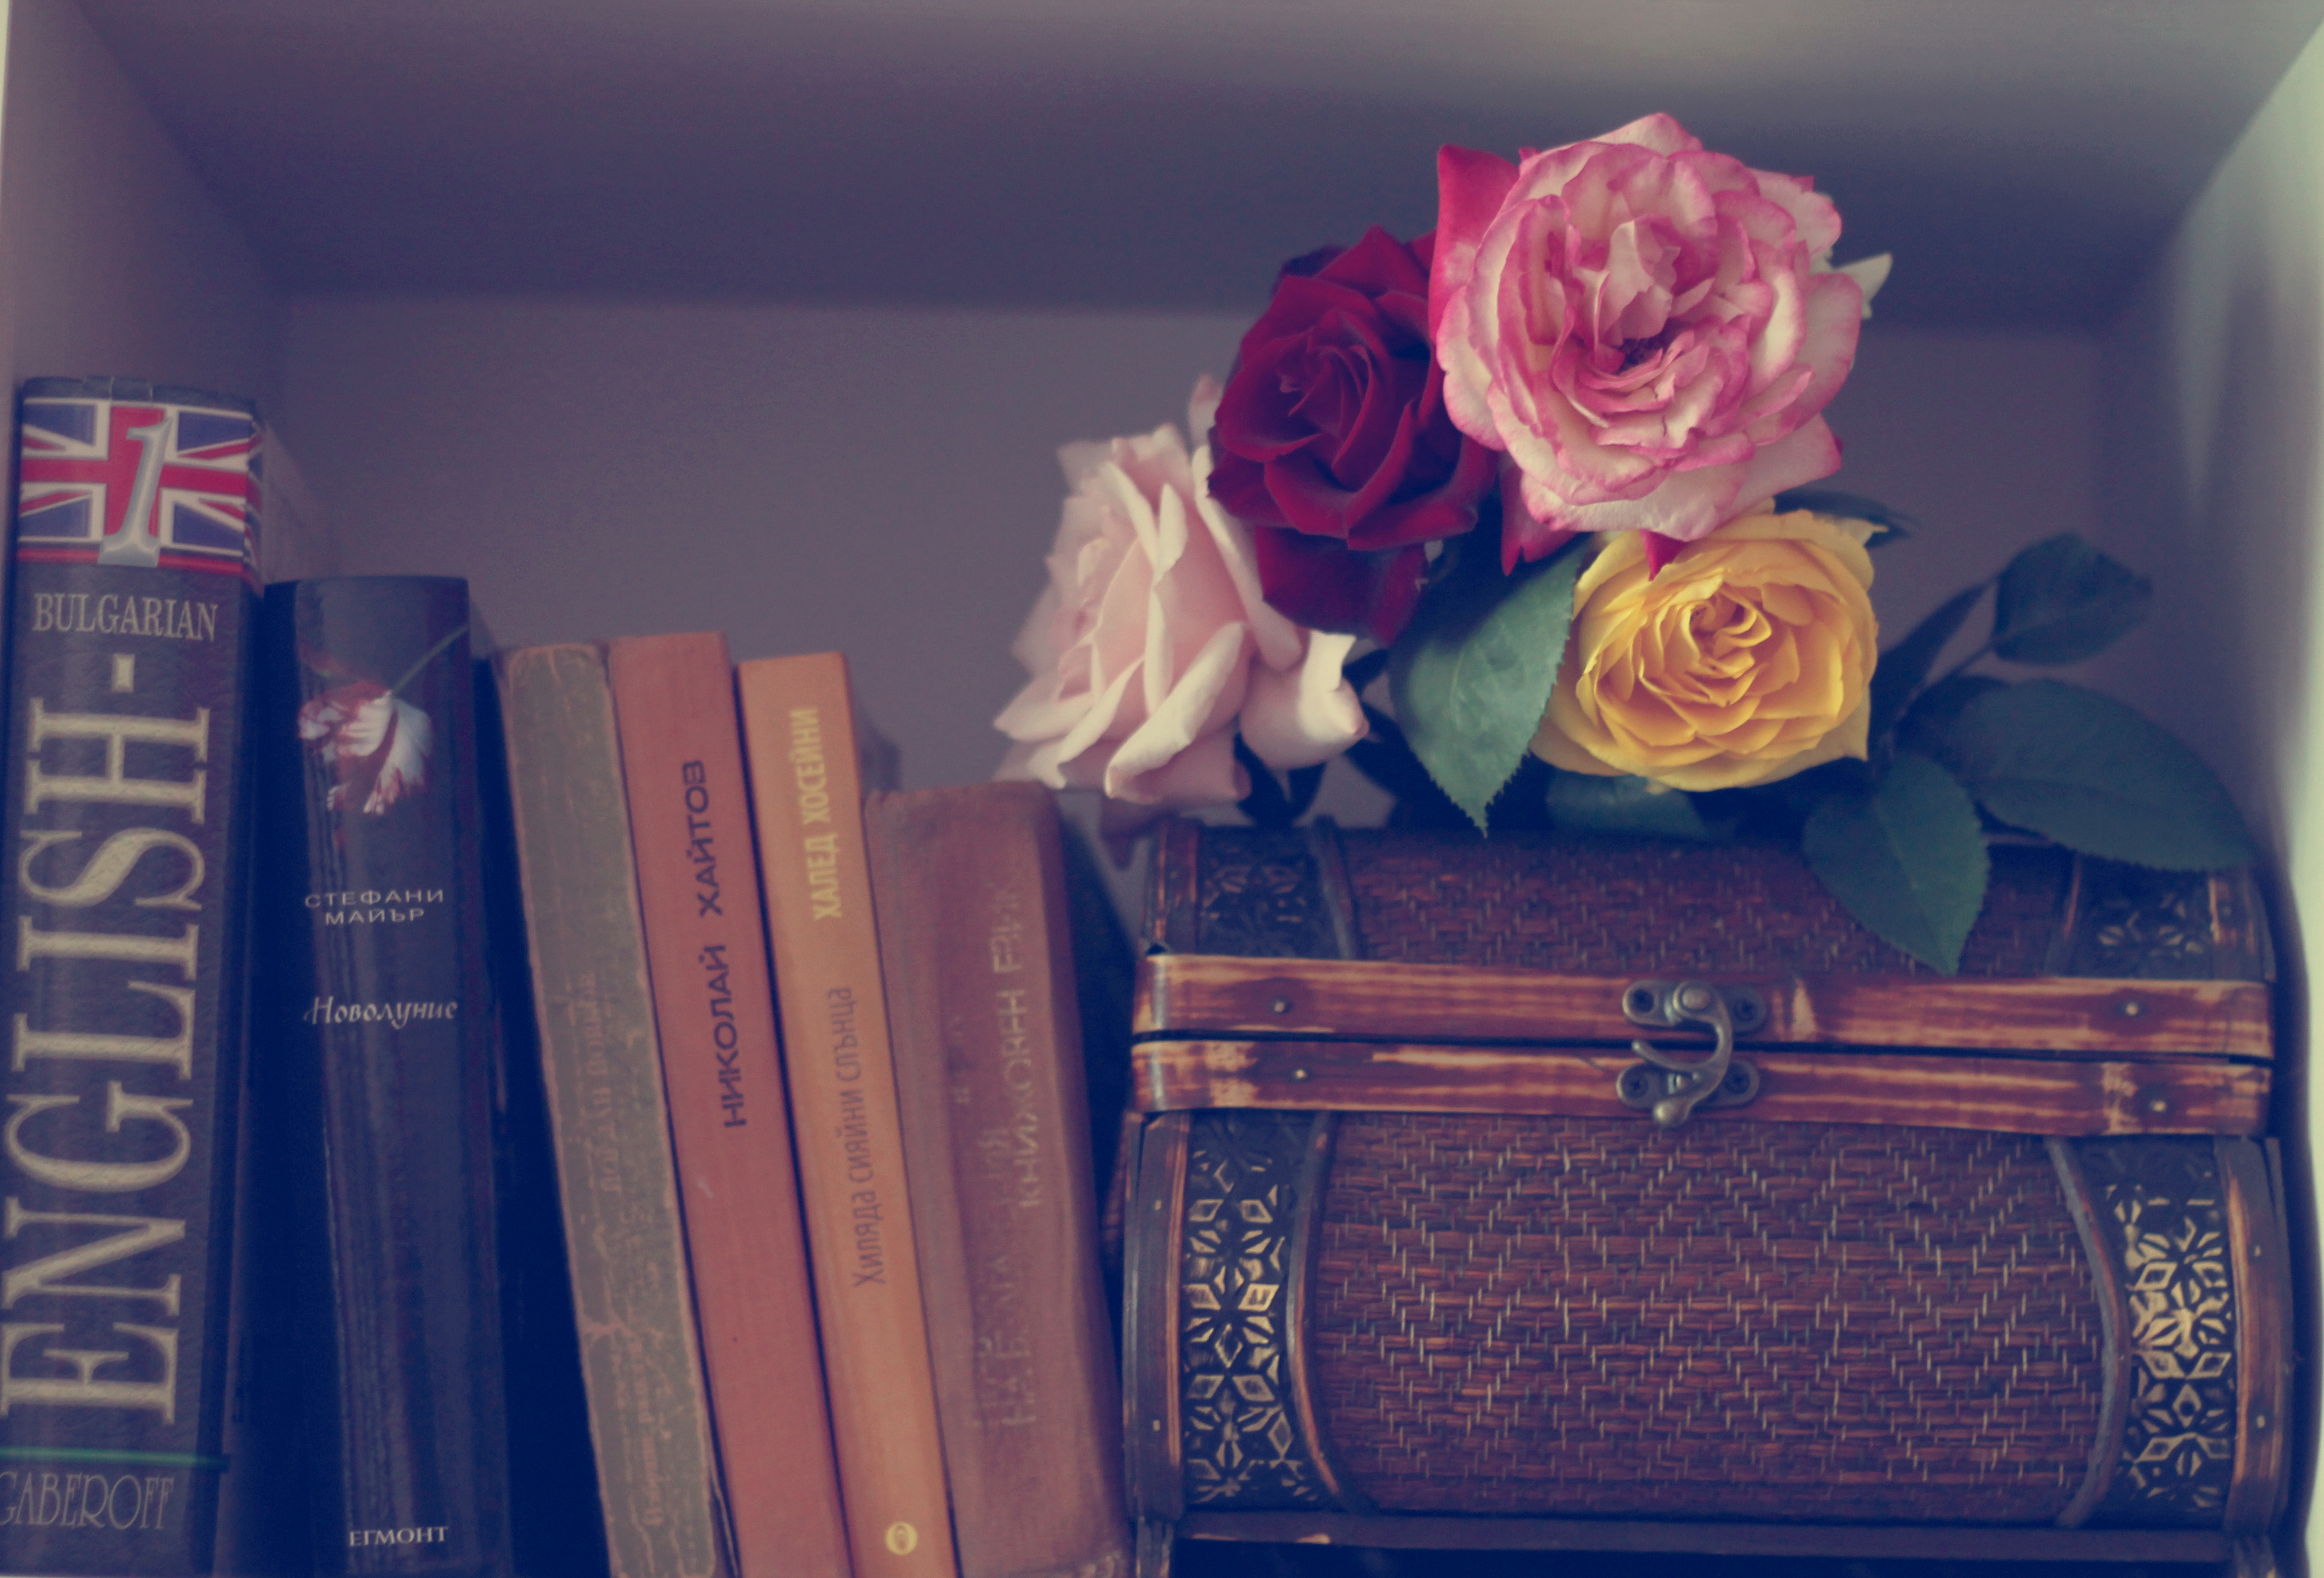 розы, книга, листья скачать